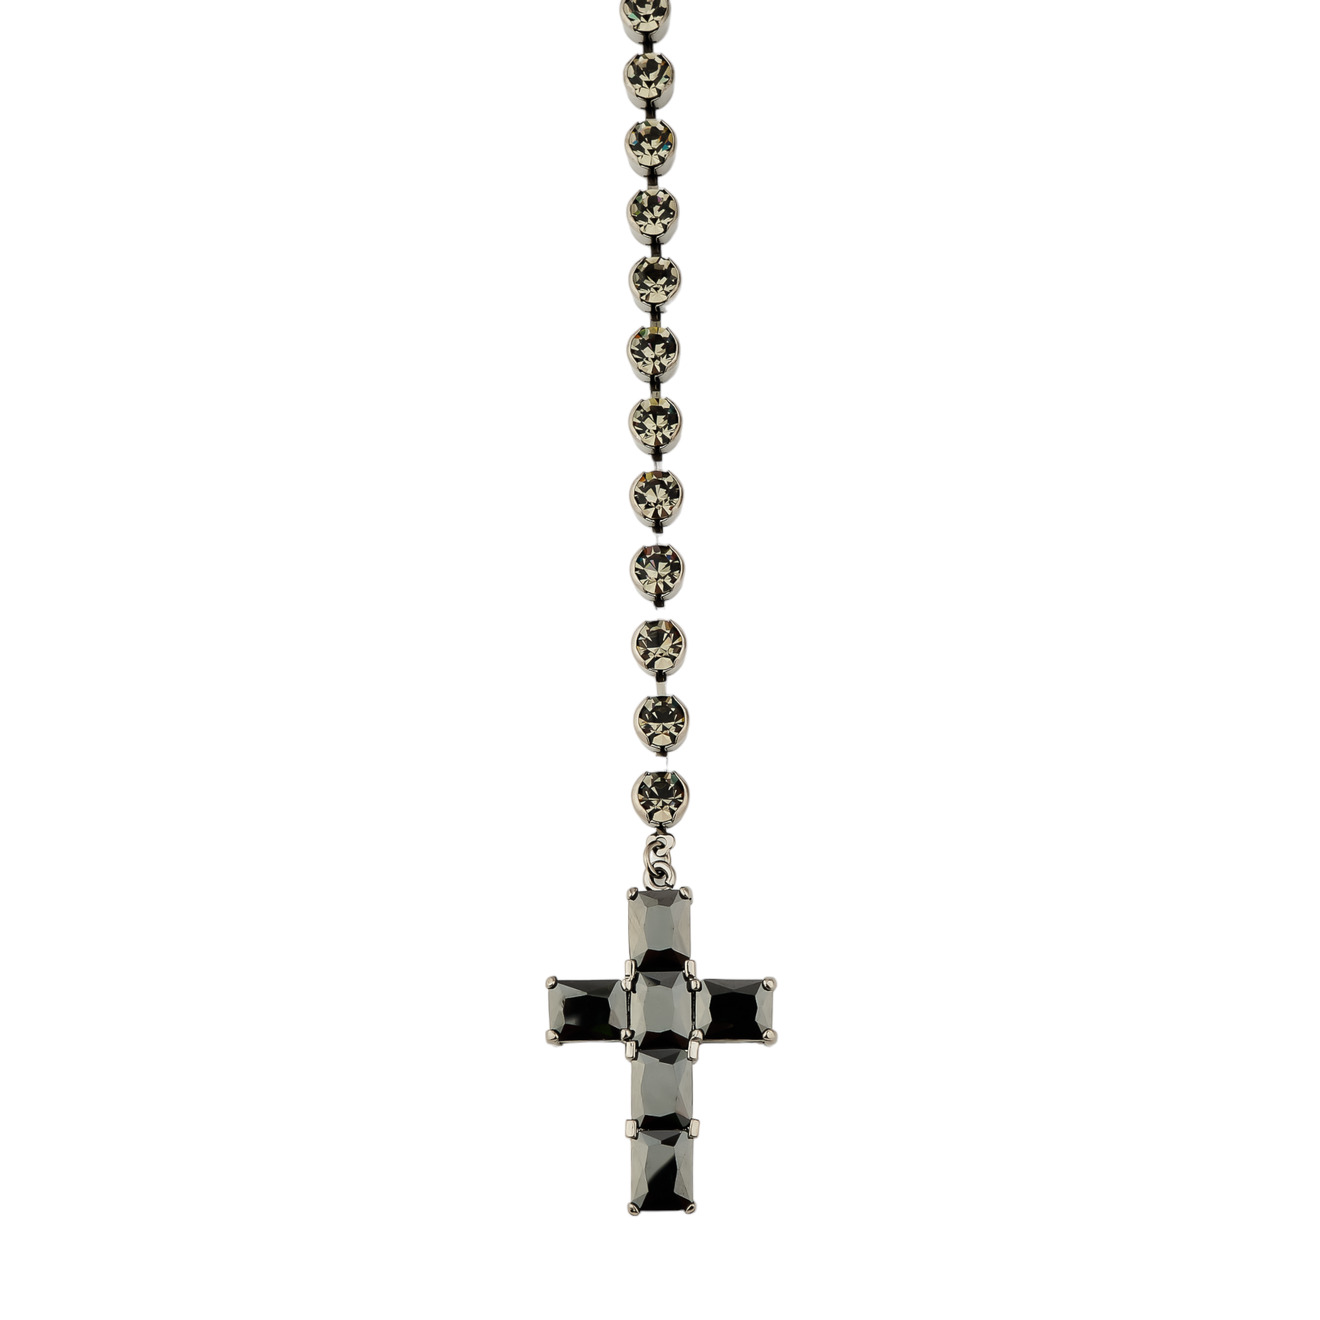 Herald Percy Сотуар с кристаллами и подвеской крестом черного цвета herald percy золотистое двойное колье цепь с кристаллами и подвеской сердцем